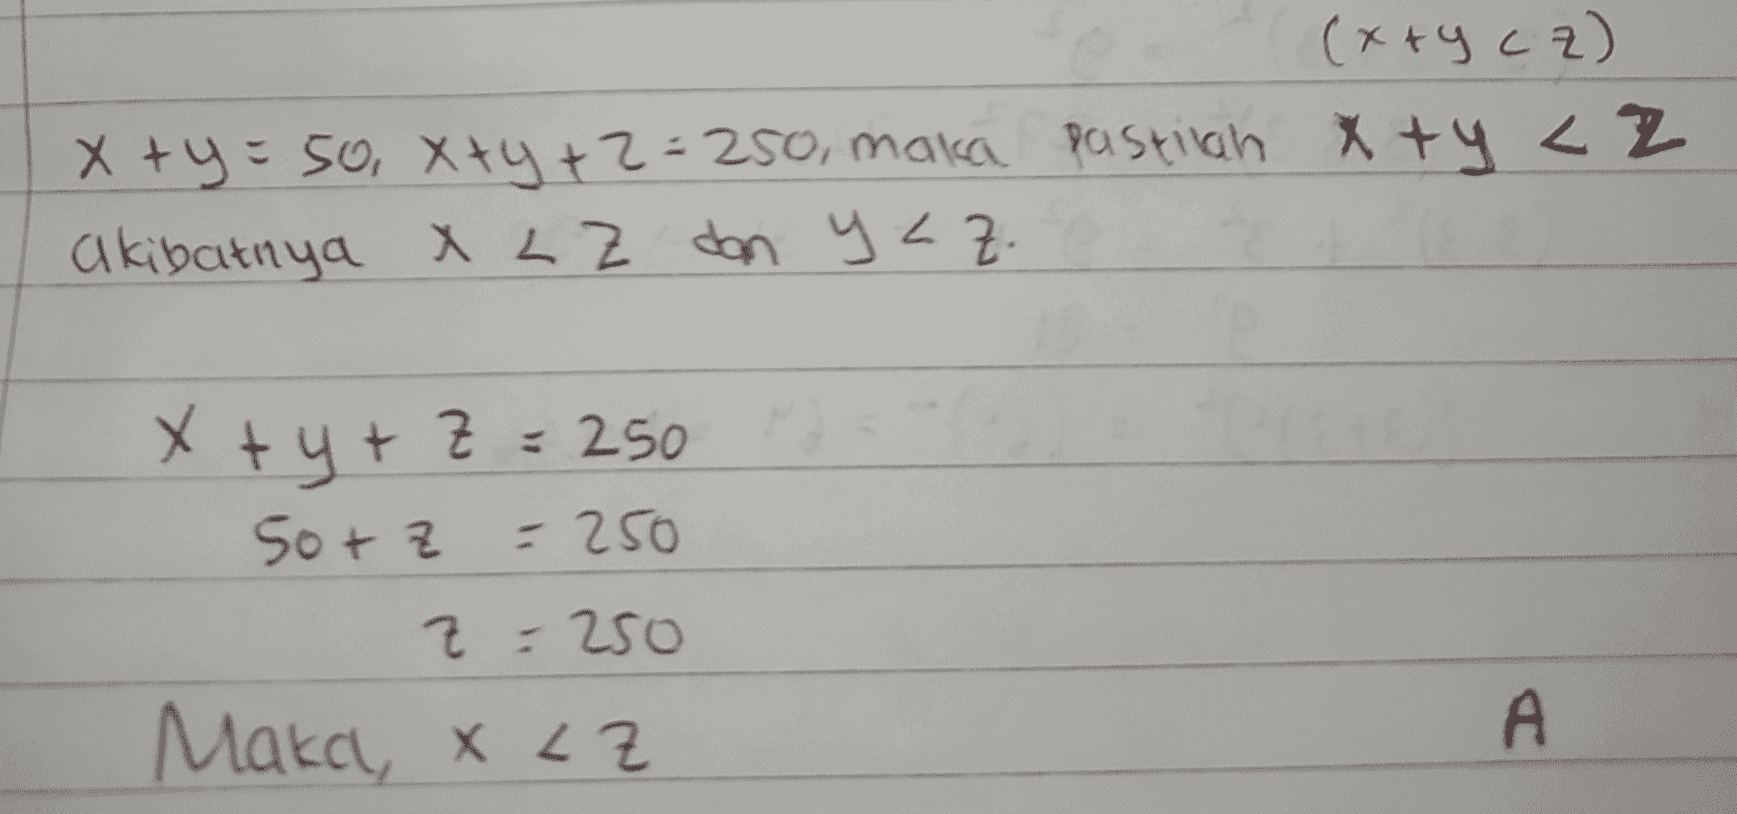 (x+y cz) x + y = 50, X+y+z=250, maka pastilah xty cz akibatnya X LE dan yaz. x + y + z = 250 50+ z - 250 z = 250 Maka x <z A 